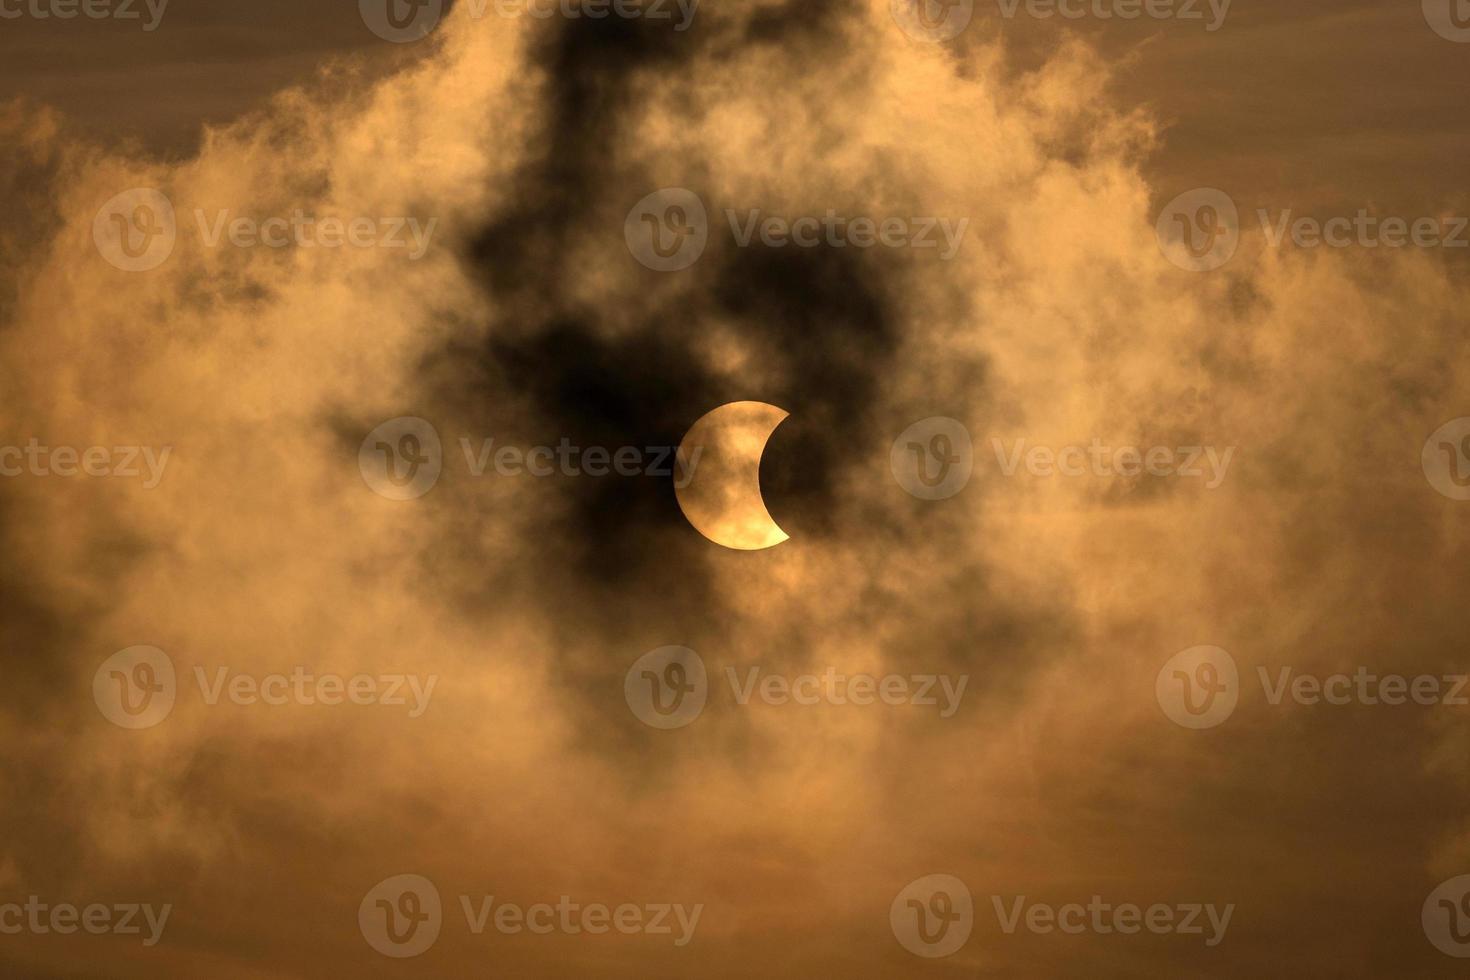 a lua cobrindo o sol em um eclipse parcial com nuvens dramáticas. formação científica, fenômeno astronômico. foto